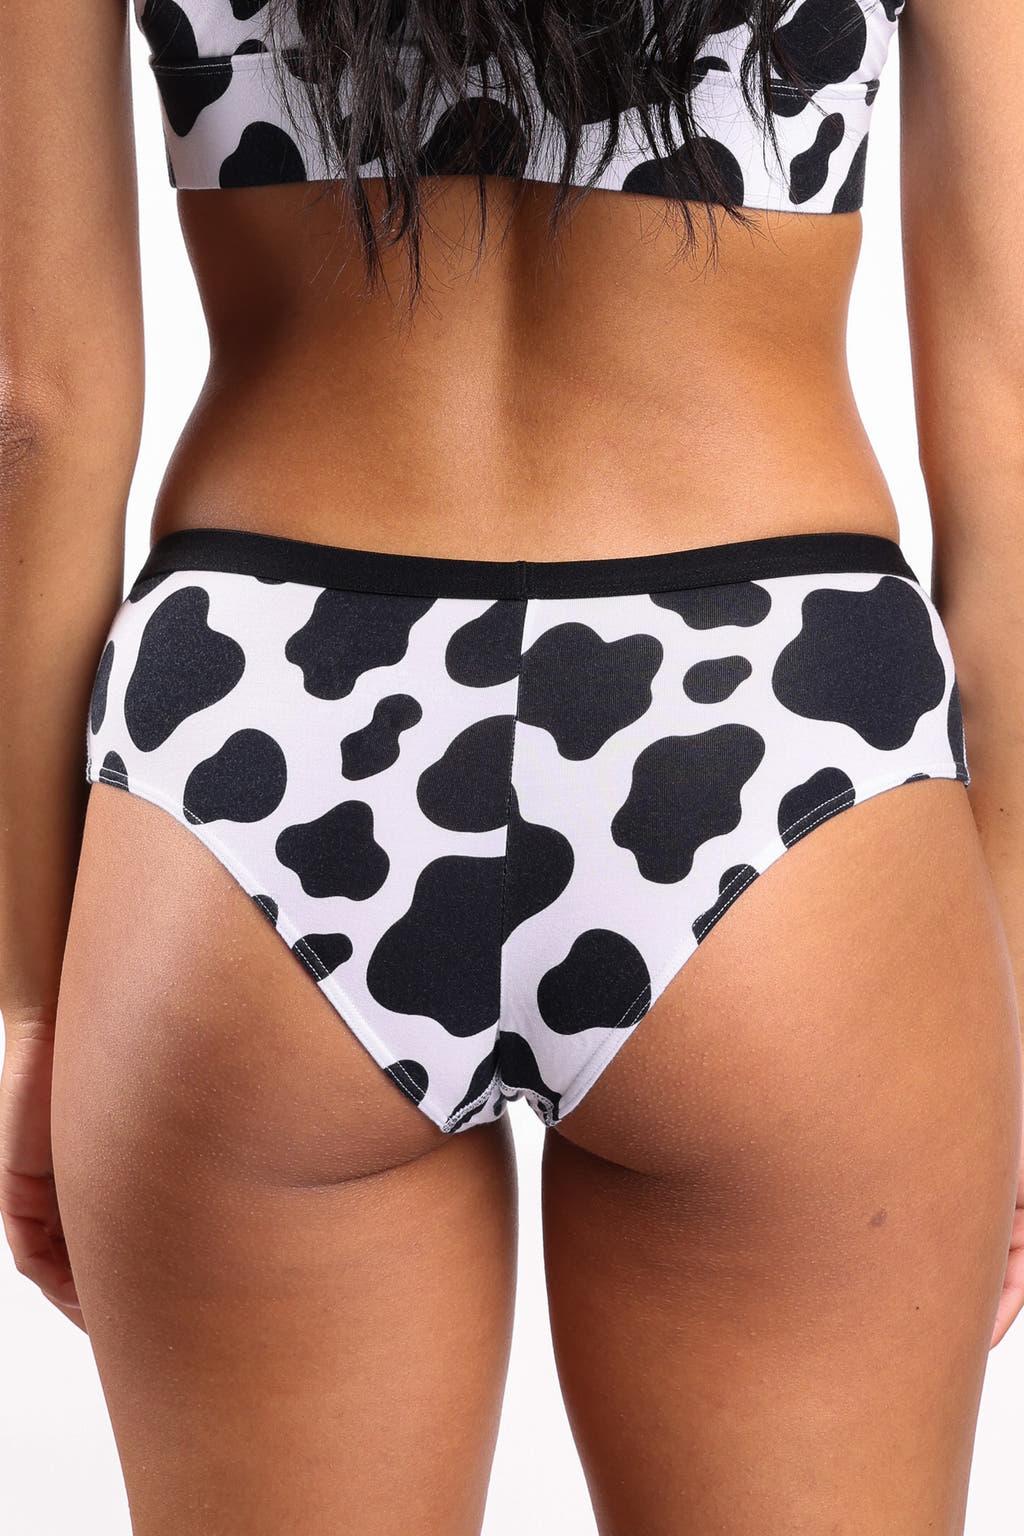 Cheeky cow print underwear